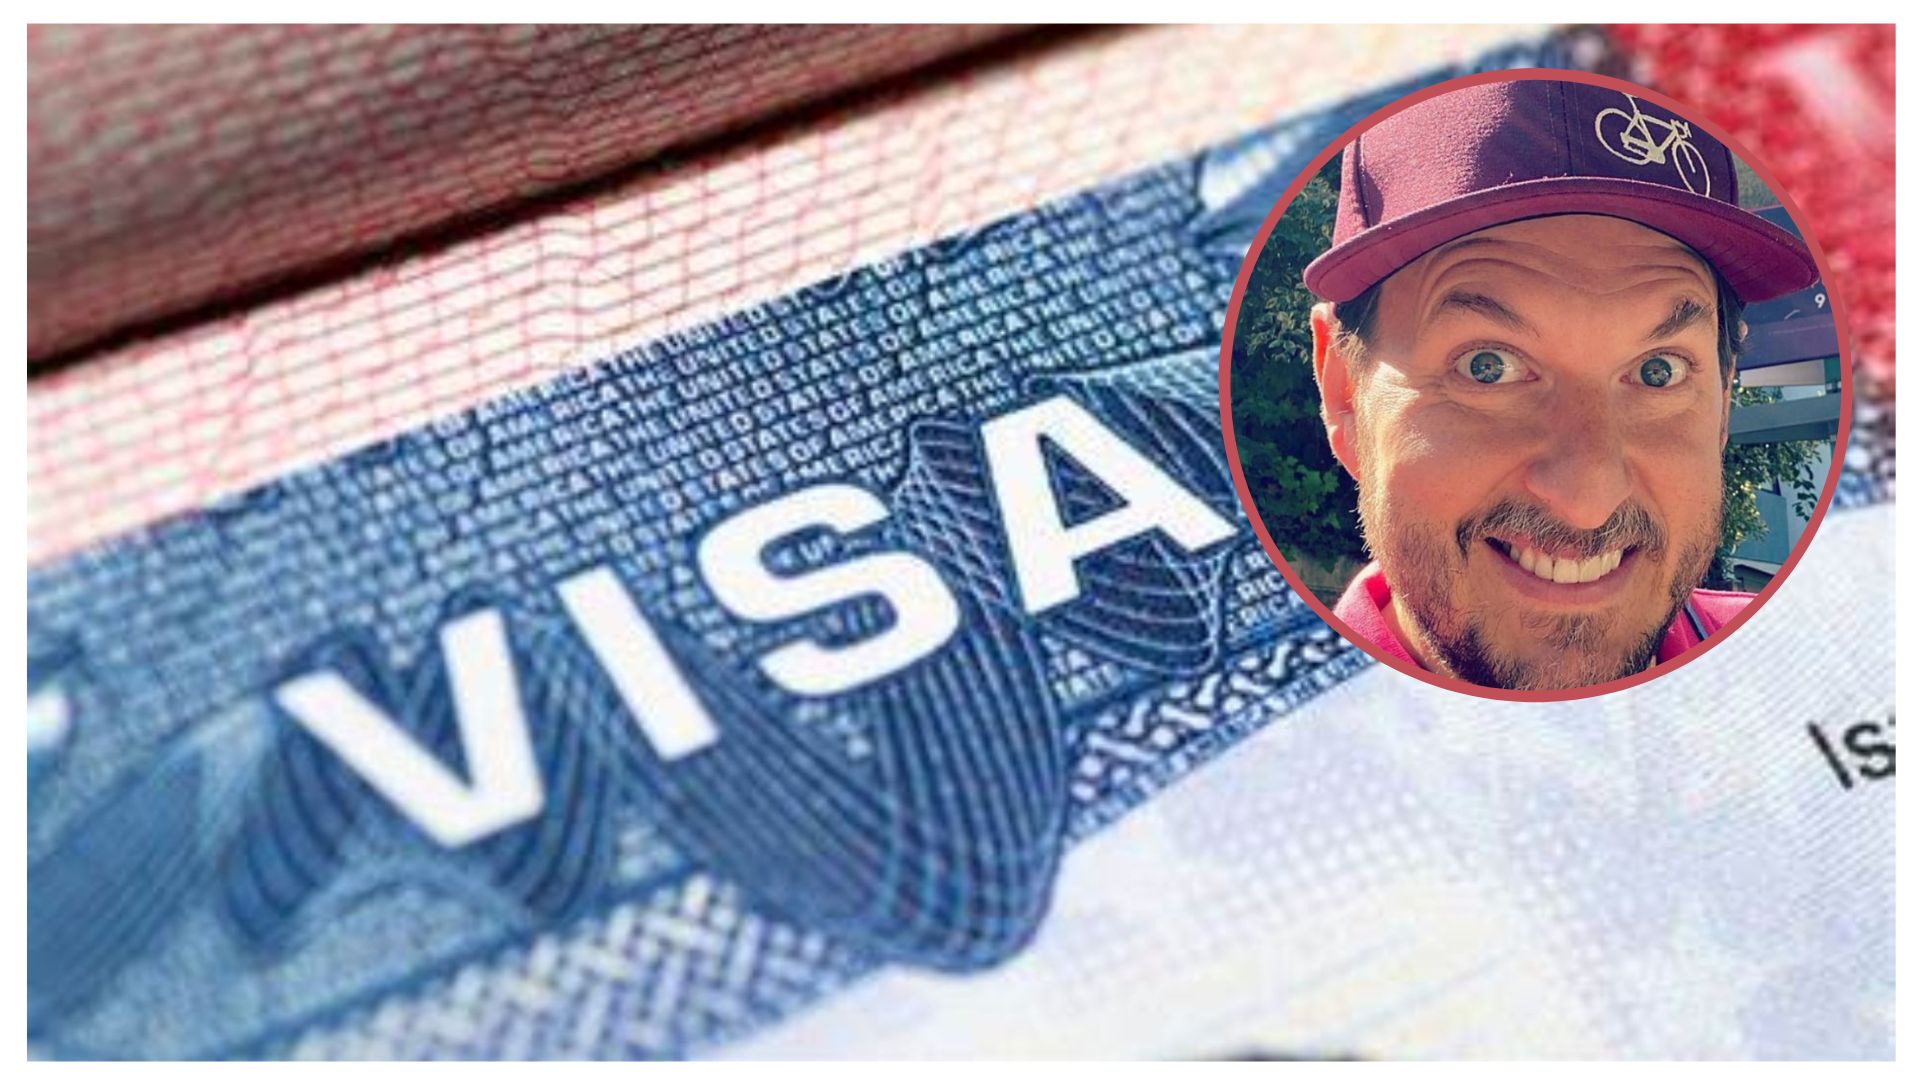 Andrés Parra perdió su visa por ir a trabajar ilegal a los Estados Unidos, cuando era joven.